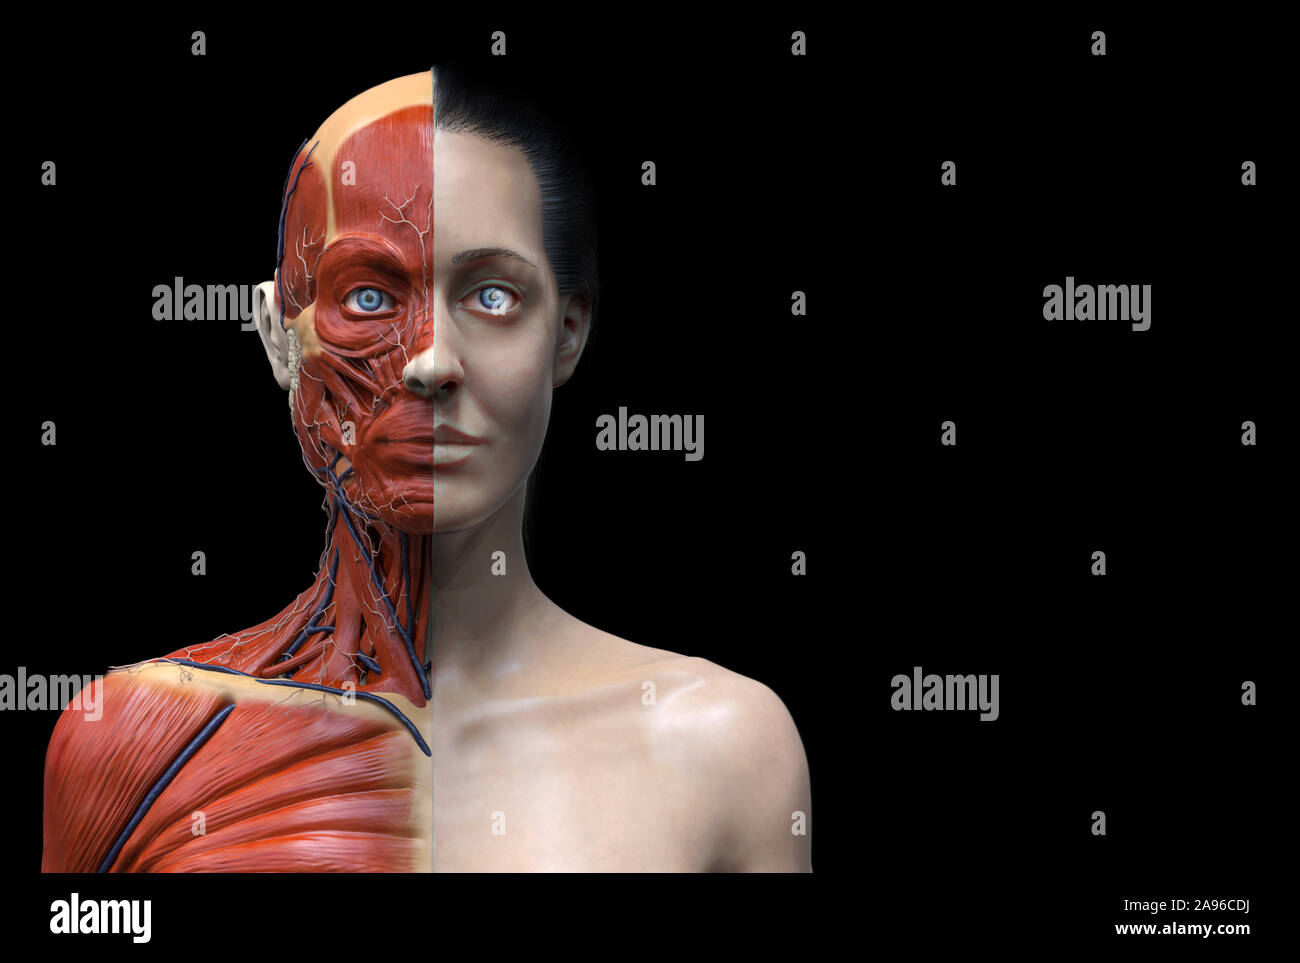 Estructura de los músculos de la anatomía del cuerpo humano de una mujer, vista frontal vista lateral y vista en perspectiva 3D Render Foto de stock